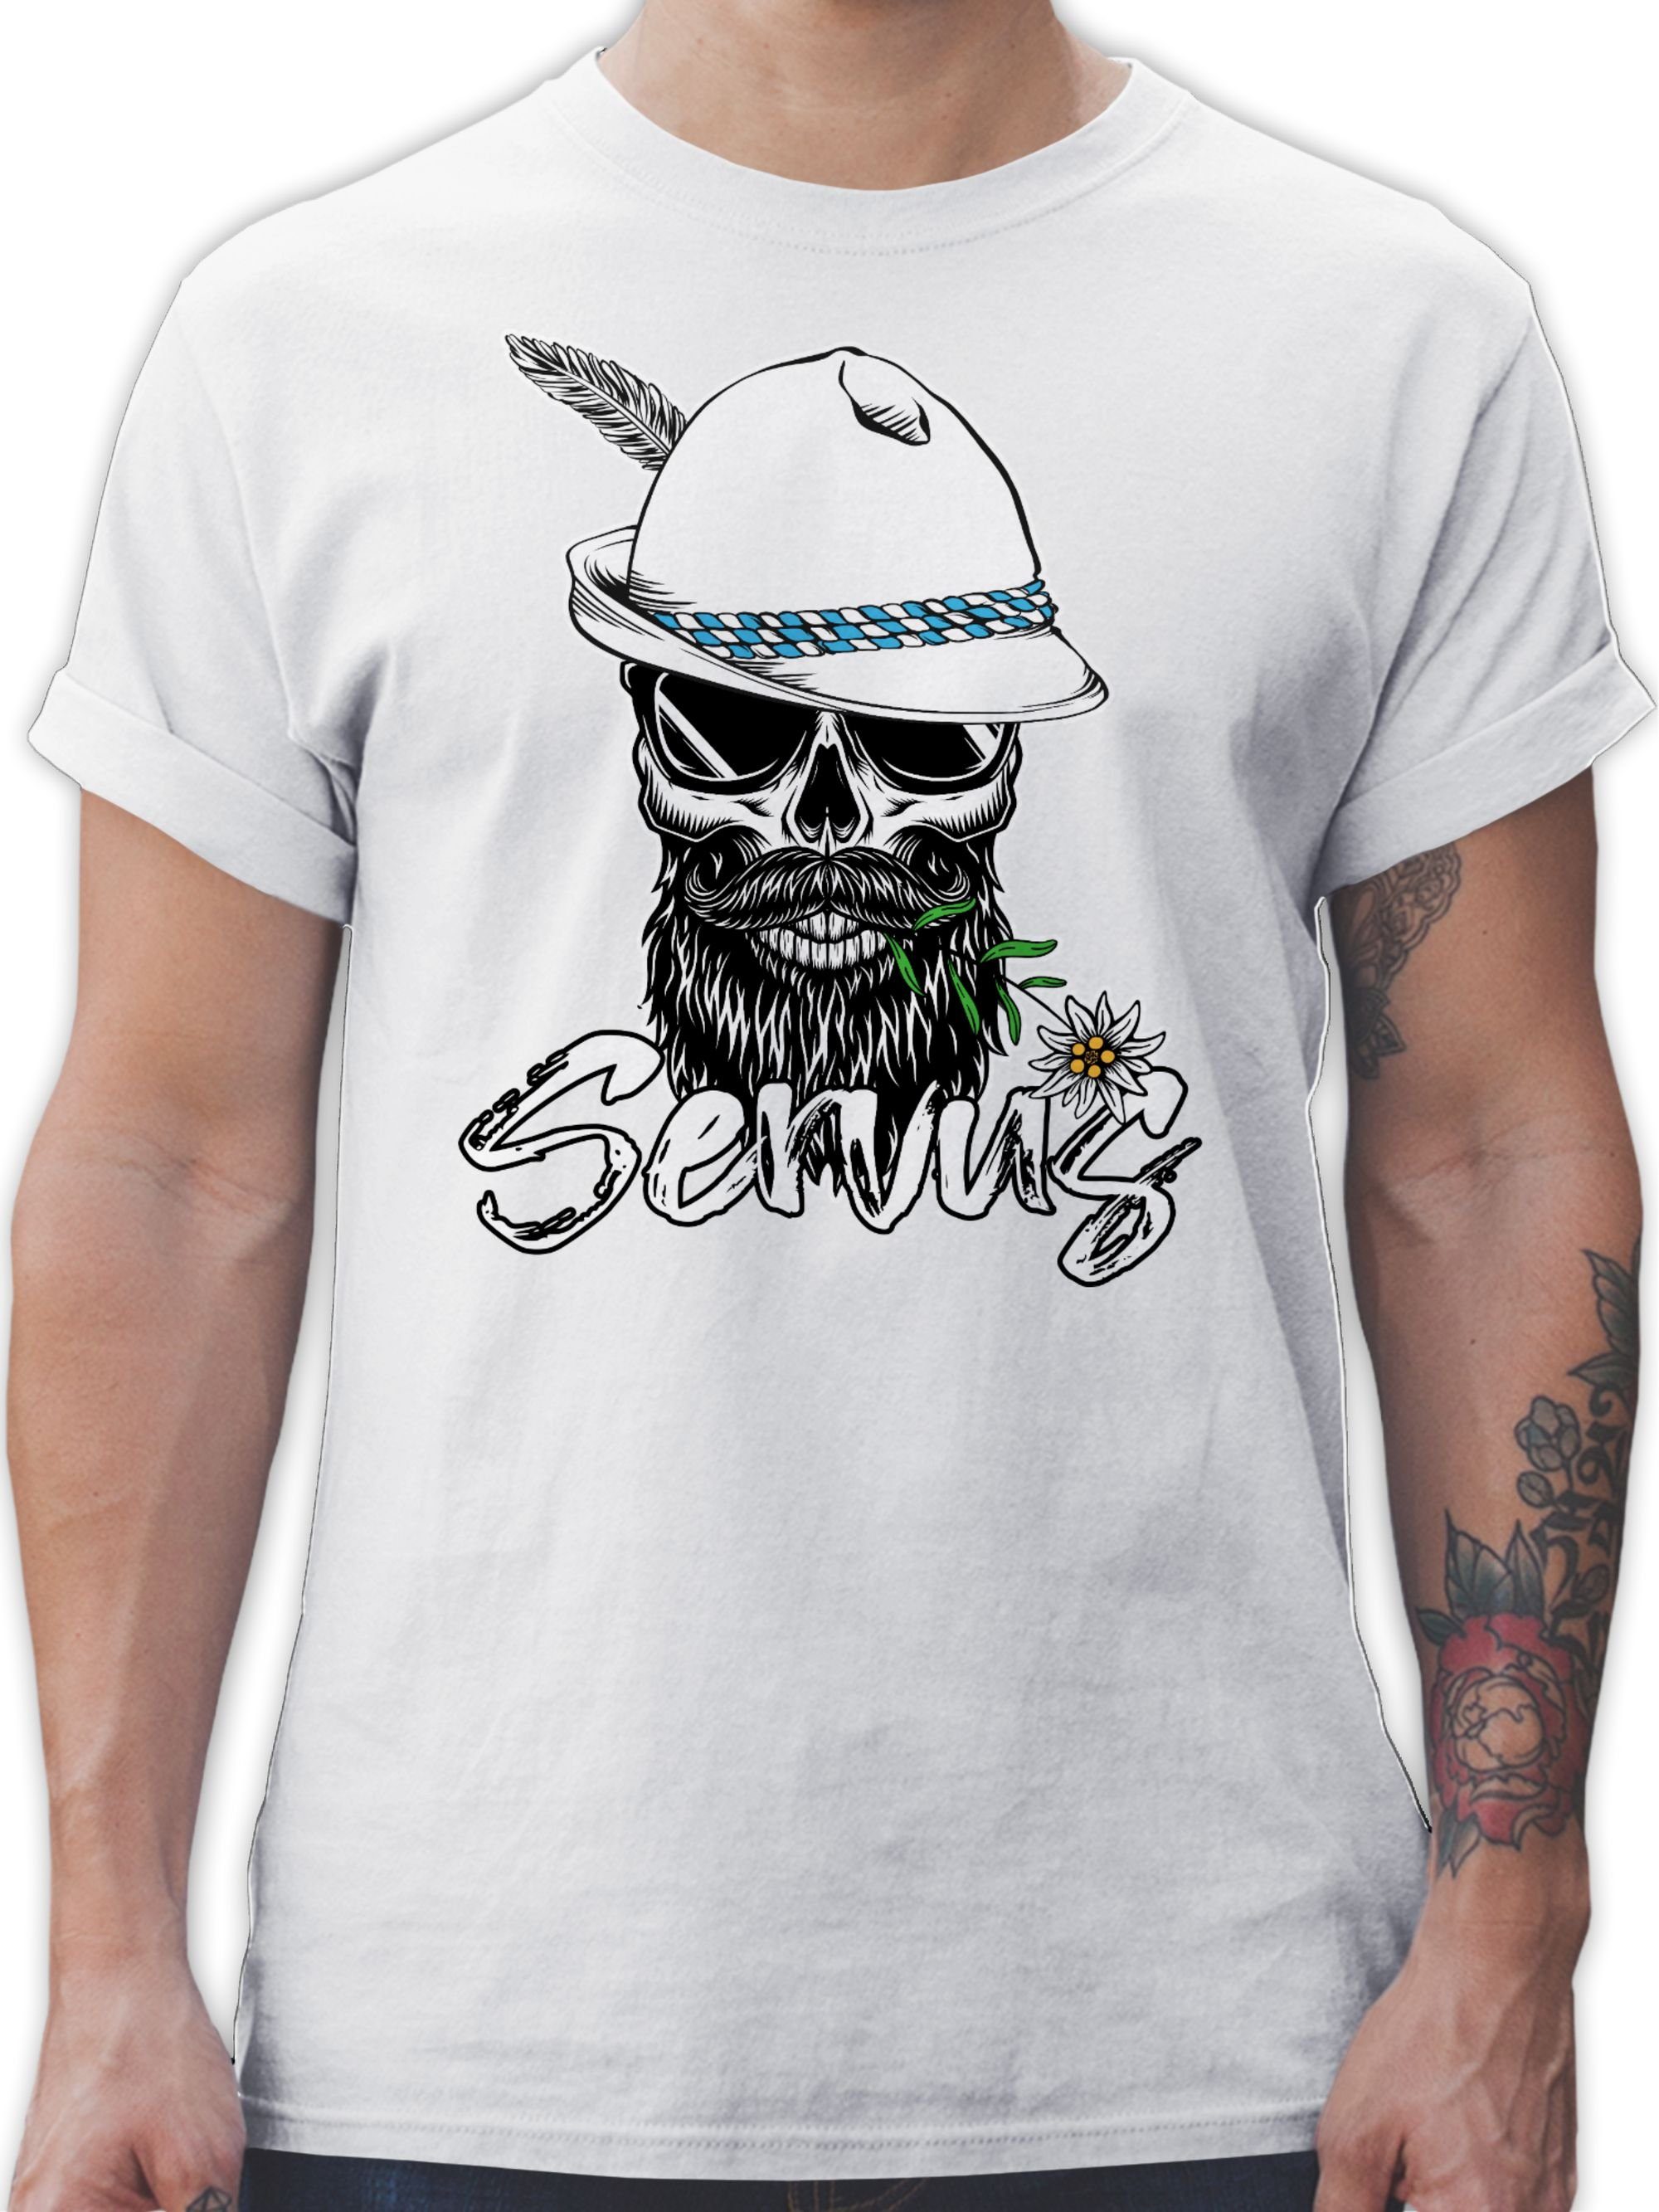 Shirtracer T-Shirt Servus Totenkopf Skull Bayrisch Mode für Oktoberfest Herren 02 Weiß